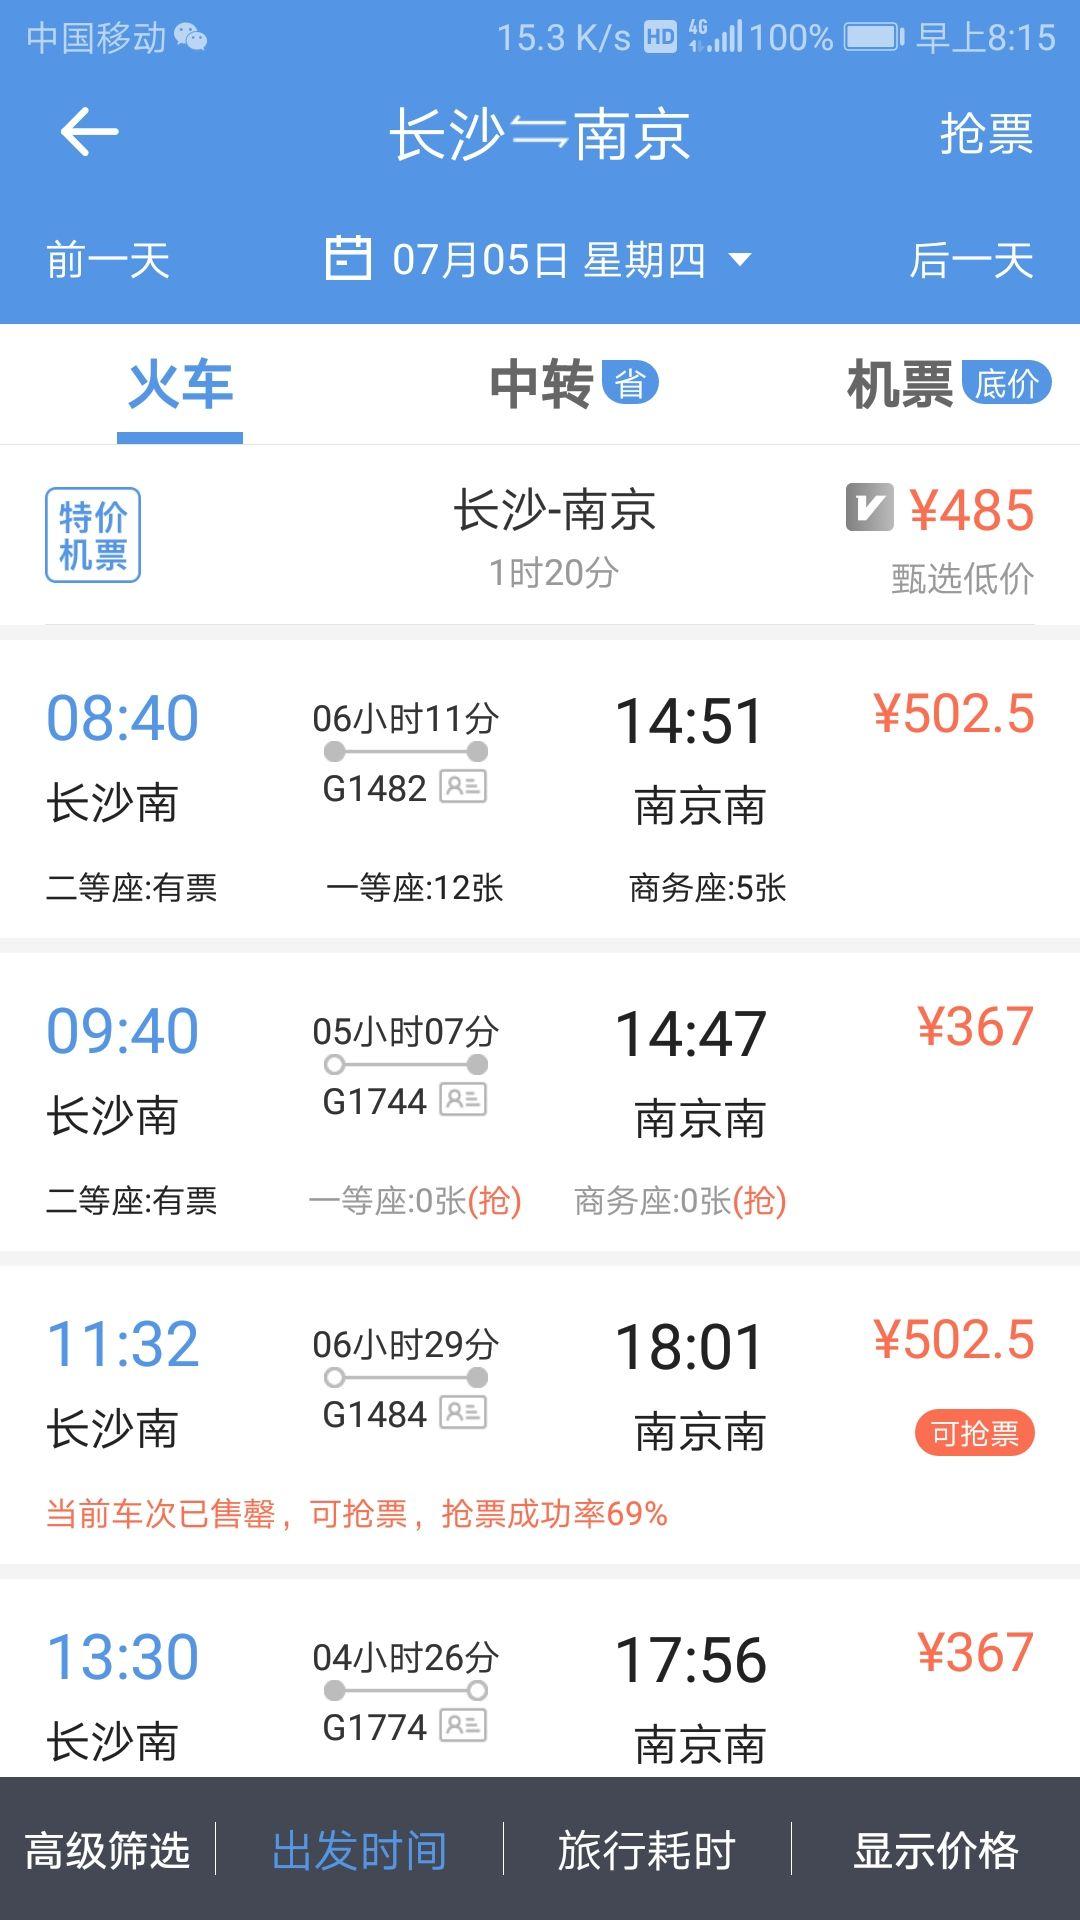 首先看下机票, 江苏那面有个怪事,动不动高铁比机票贵,还是普遍现象